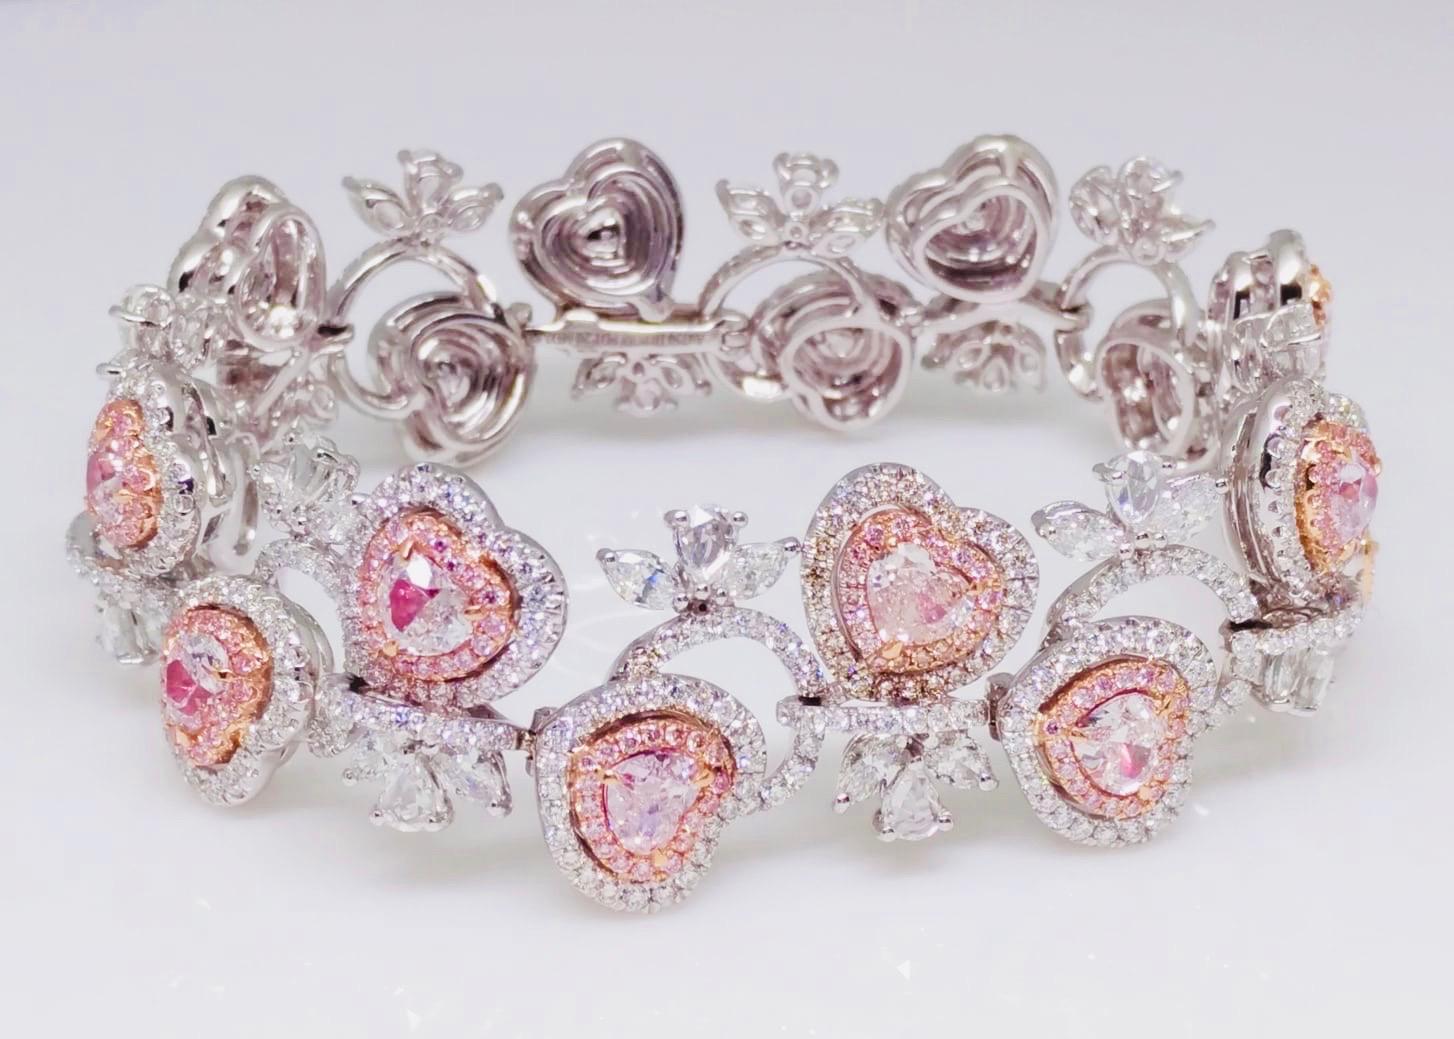 De la collection Emilio Jewelry Vault, ce magnifique bracelet en diamant rose est orné de diamants roses naturels en forme de cœur. Veuillez vous renseigner pour plus d'informations. 
Les diamants naturels bleus, roses et verts sont extrêmement